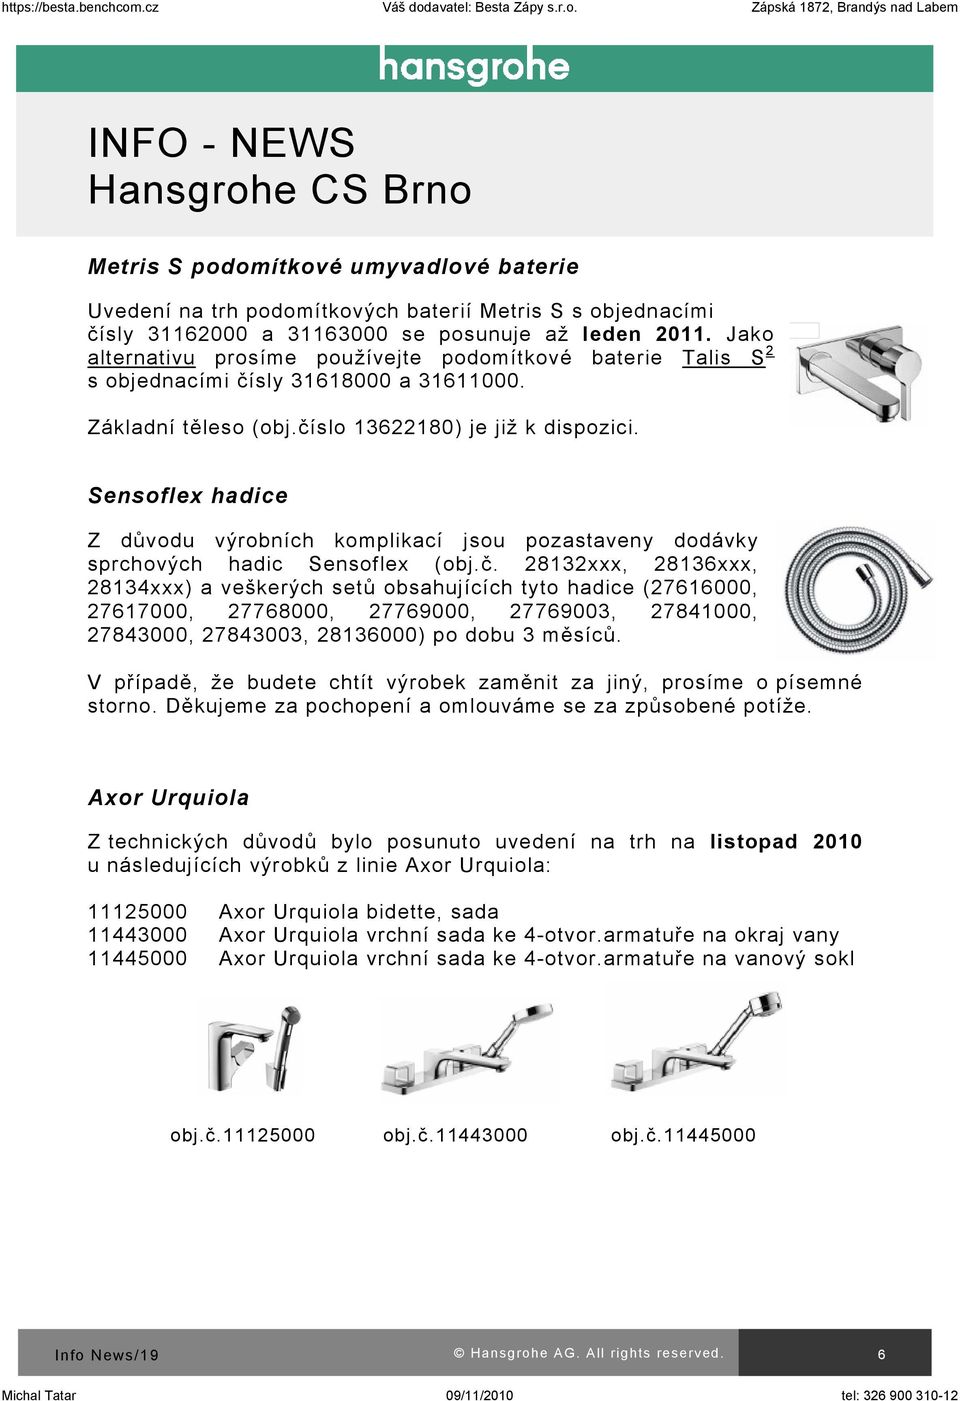 Sensoflex hadice Z důvodu výrobních komplikací jsou pozastaveny dodávky sprchových hadic Sensoflex (obj.č.